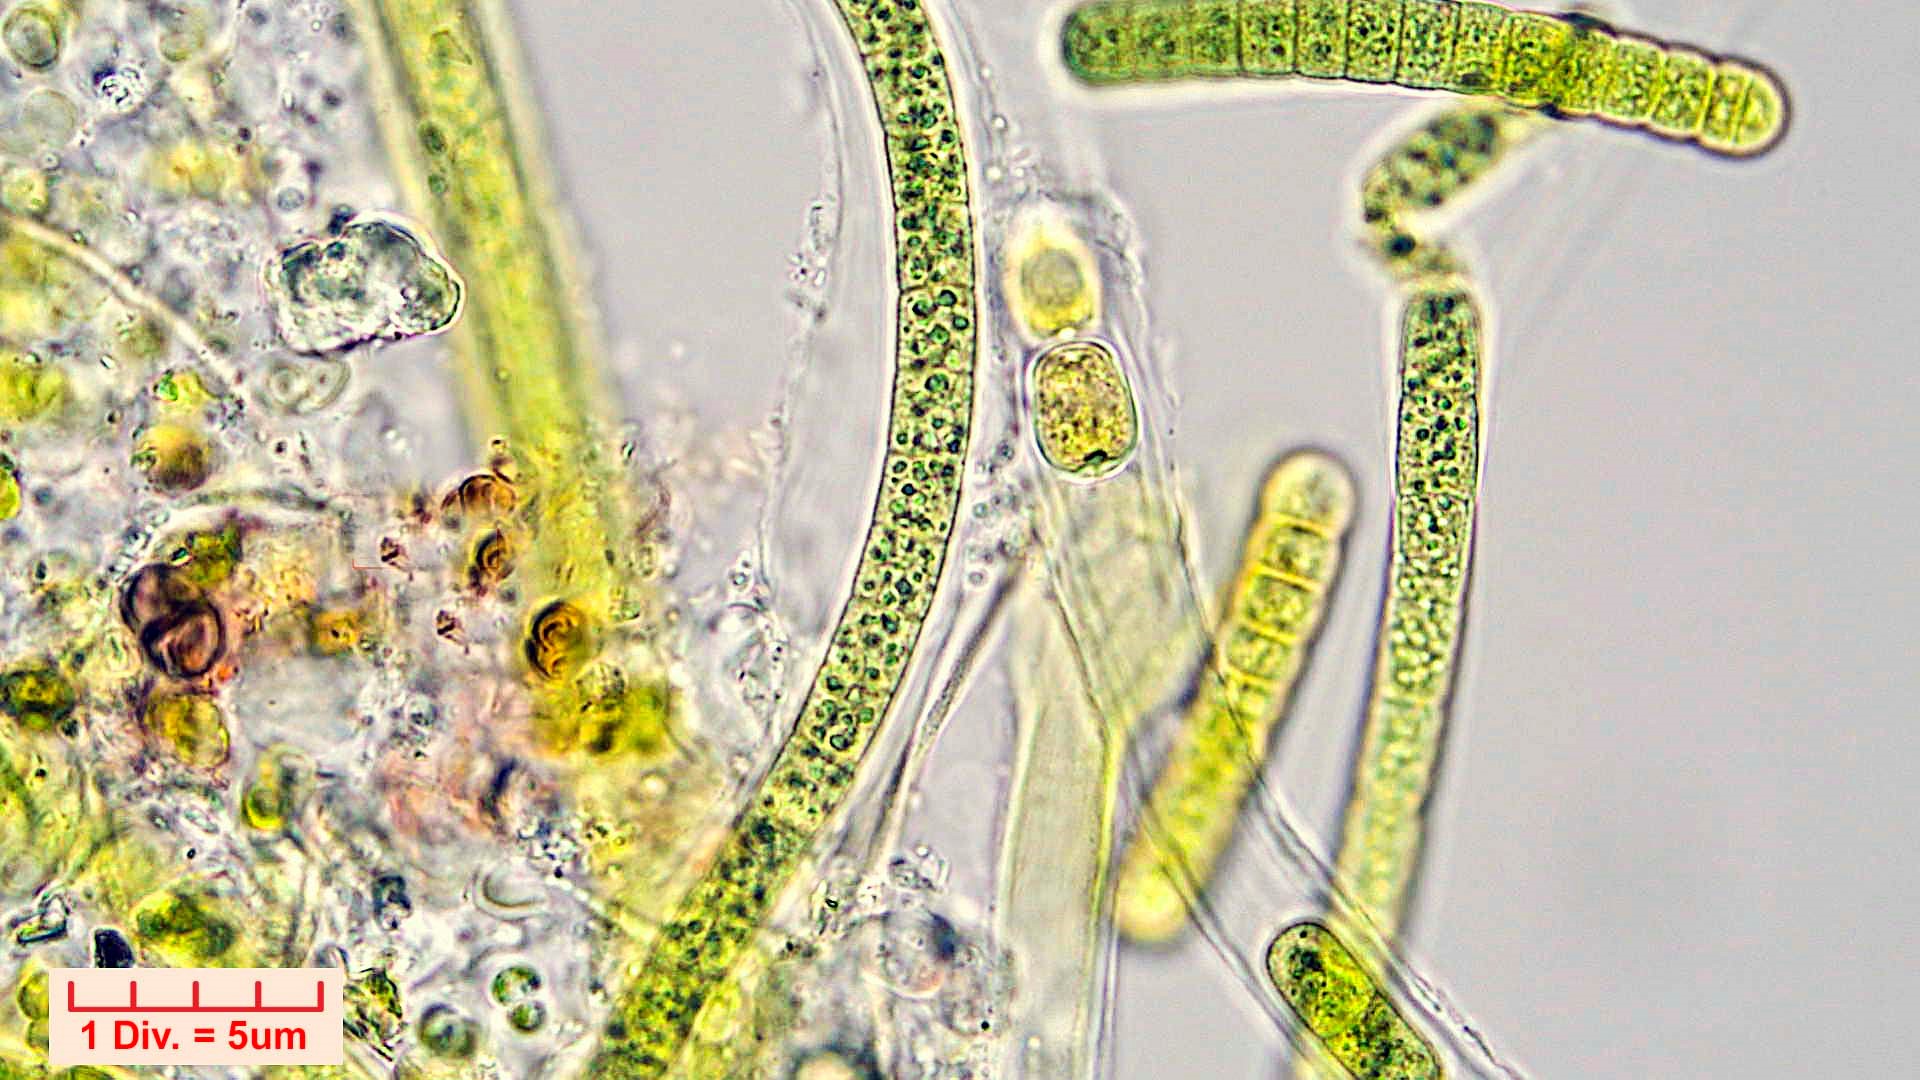 ./././Cyanobacteria/Nostocales/Tolypothrichaceae/Tolypothrix/calcarata/tolypothrix-calcarata-320.jpg